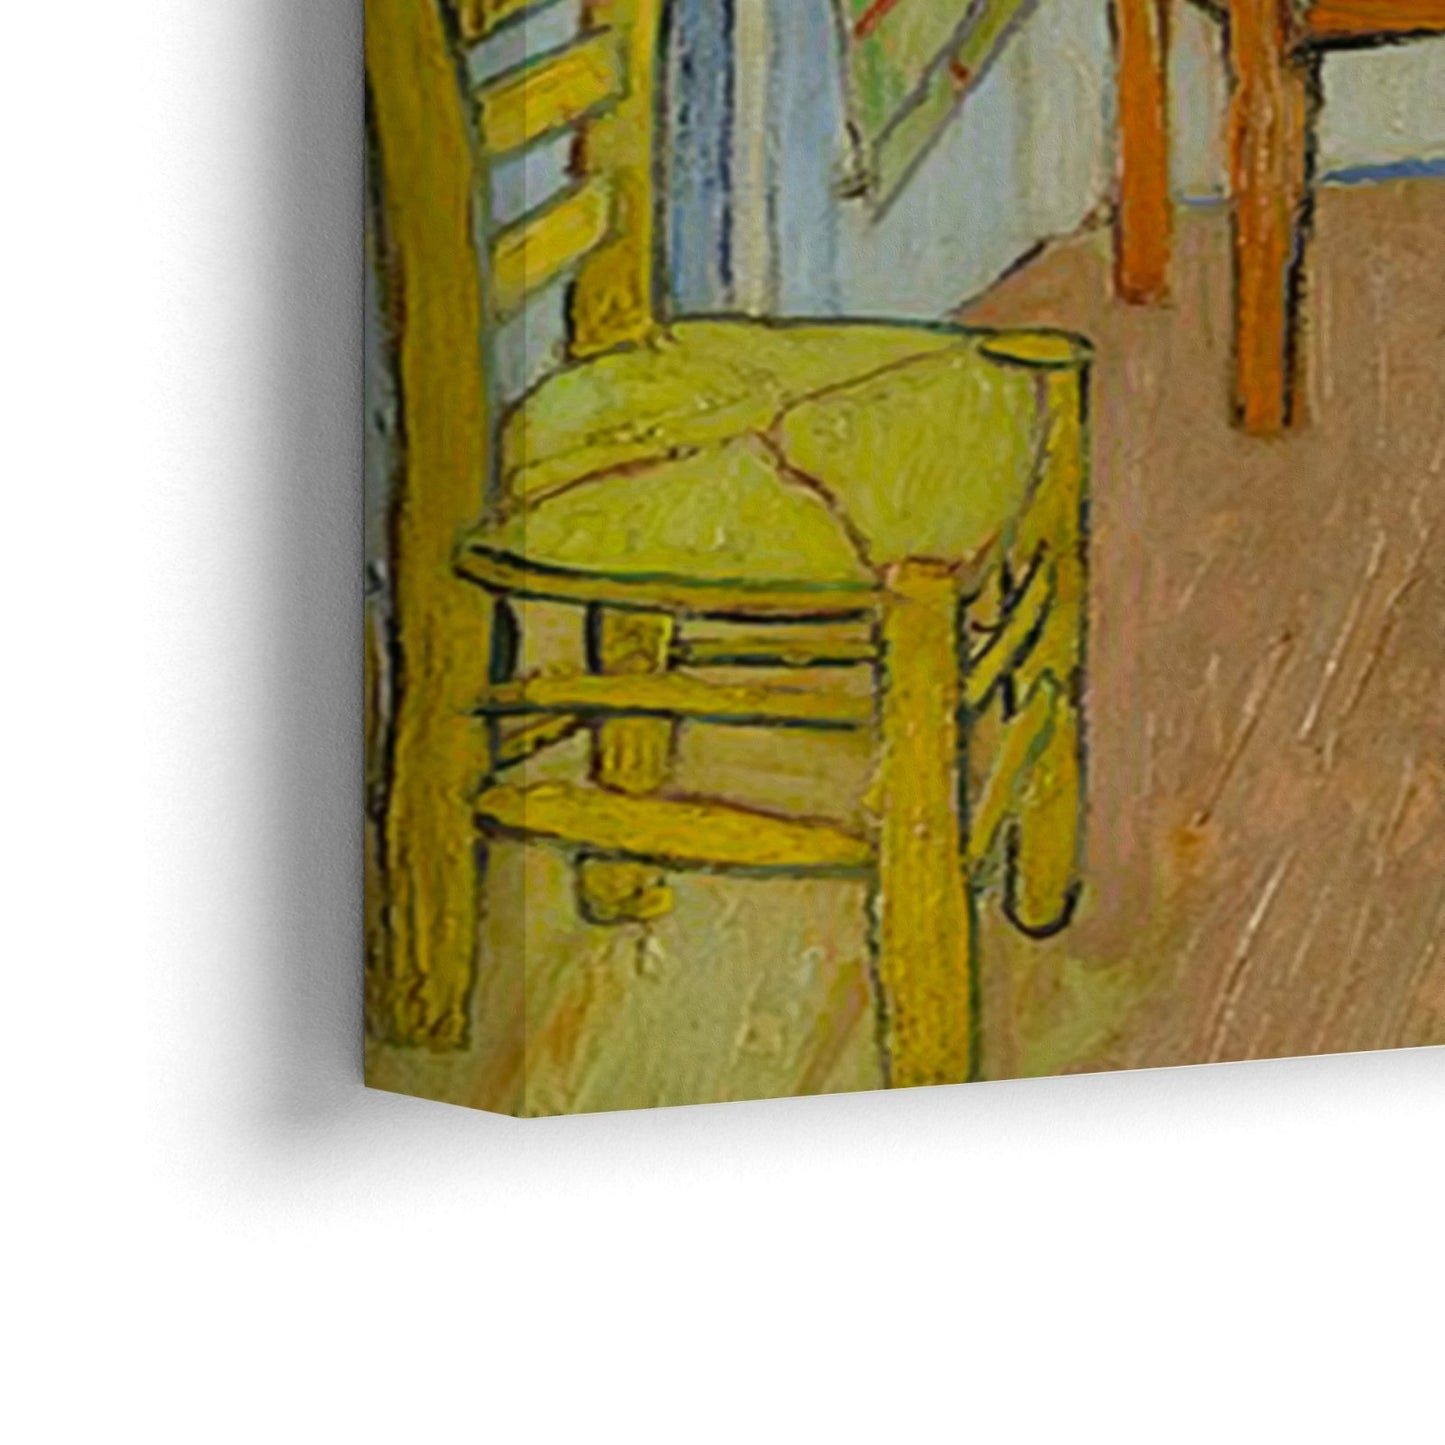 Sovrum i Arles, Vincent Van Gogh